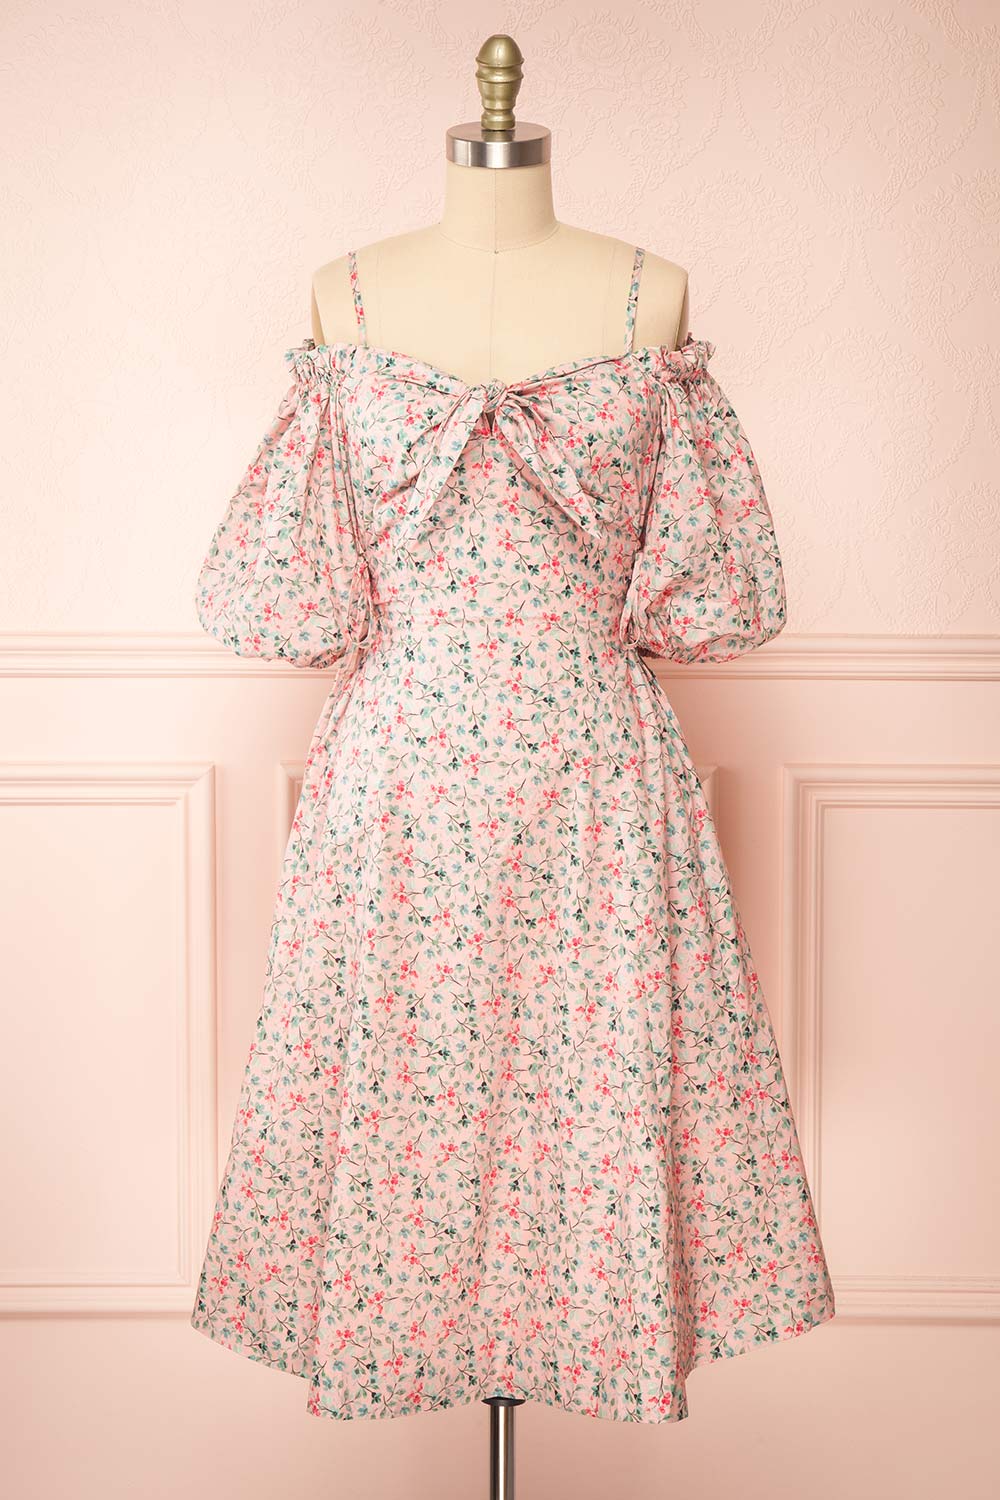 Daphnie Short Floral Dress w/ Corset Side Ties | Boutique 1861 front view